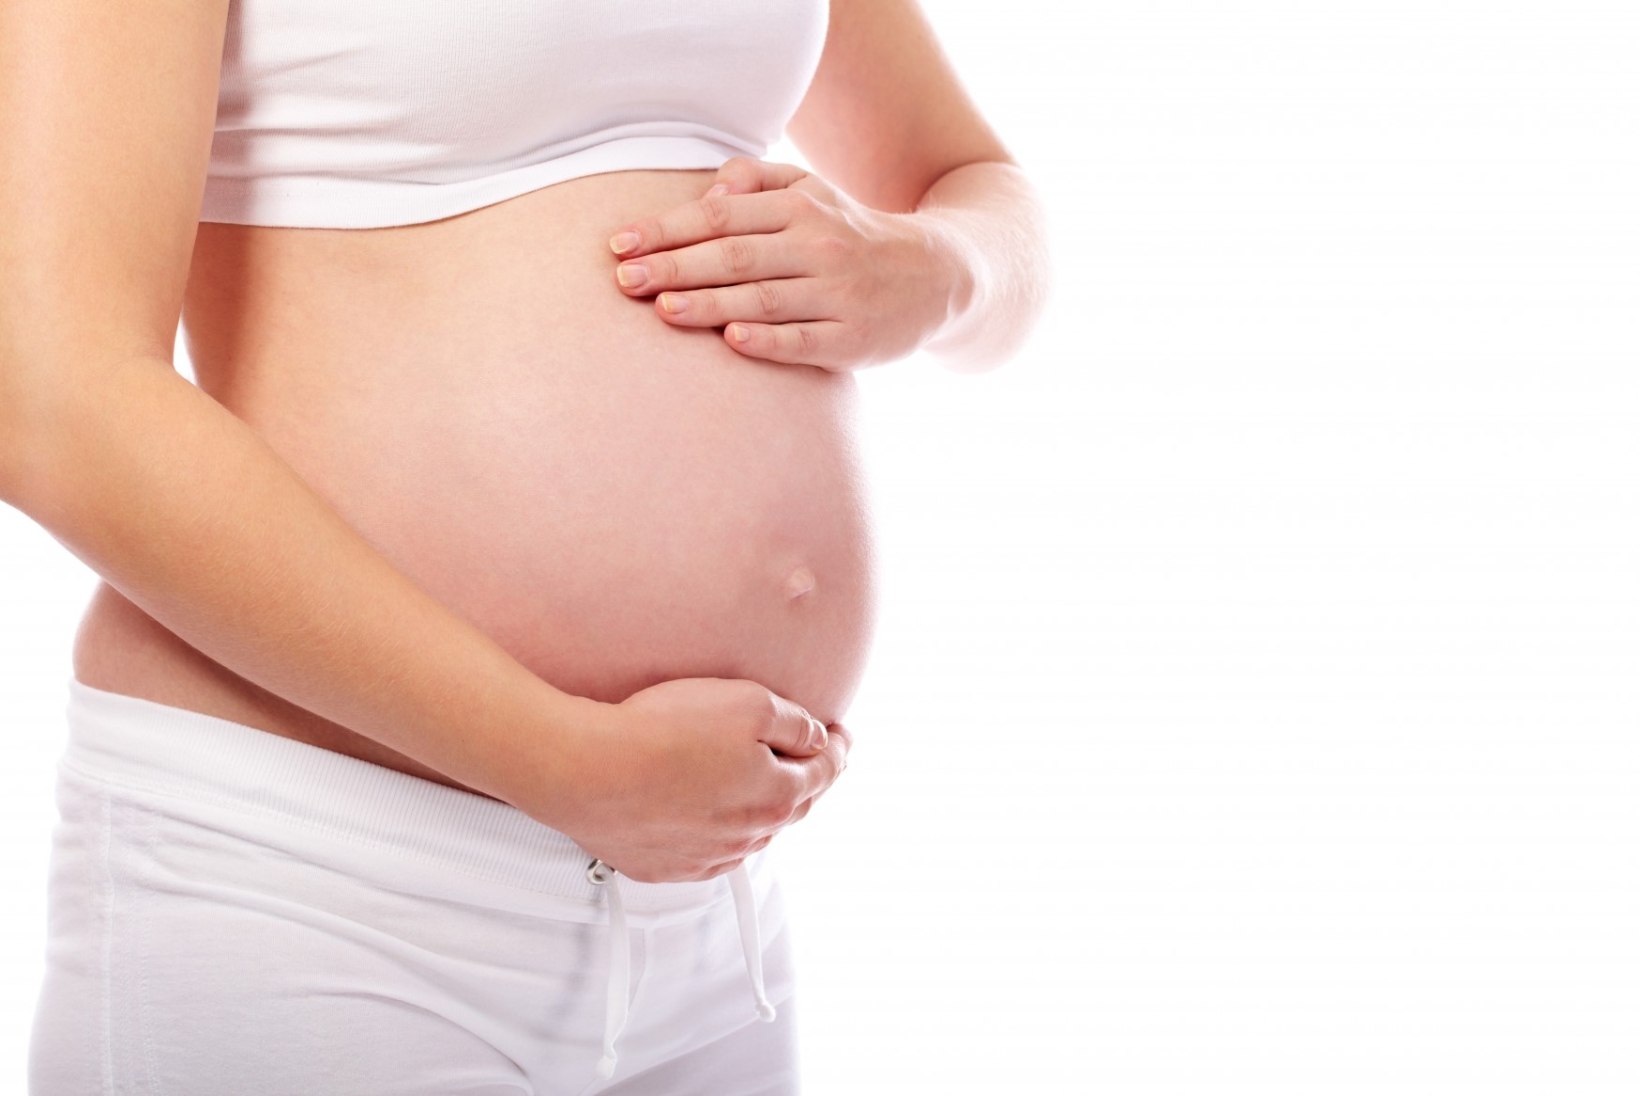 PÄRAST SÜNNITUST: Miks raseduseelne vorm ei taastu?